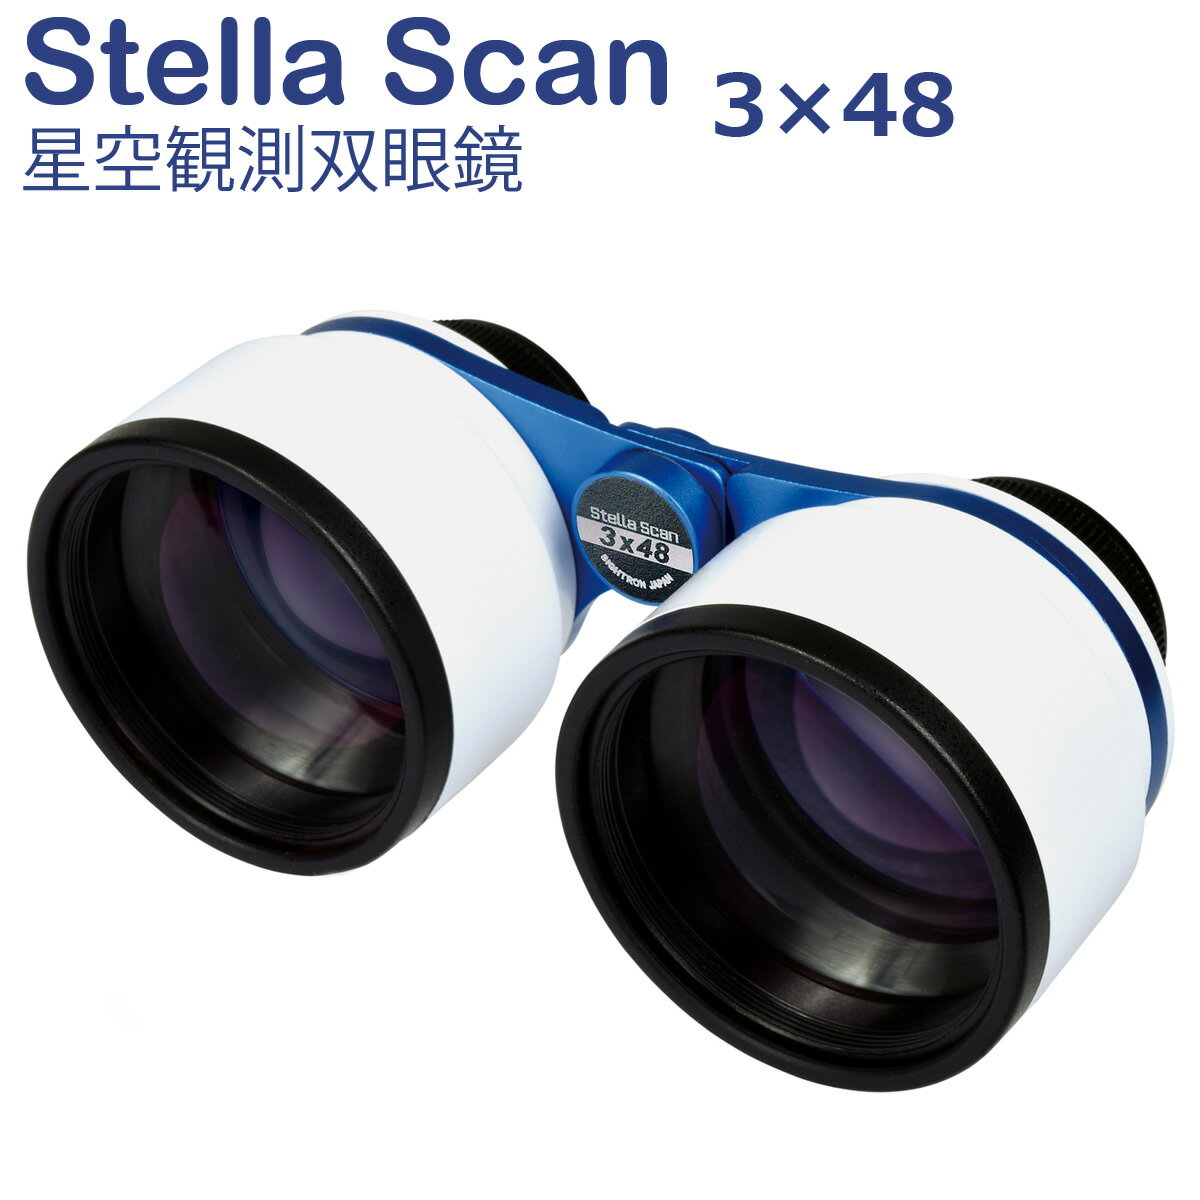 双眼鏡 天体観測 星空観測 オペラグラス STELLA SCAN ステラスキャン 3倍 48mm SIGHTRON サイトロン 軽量 コンパクト…